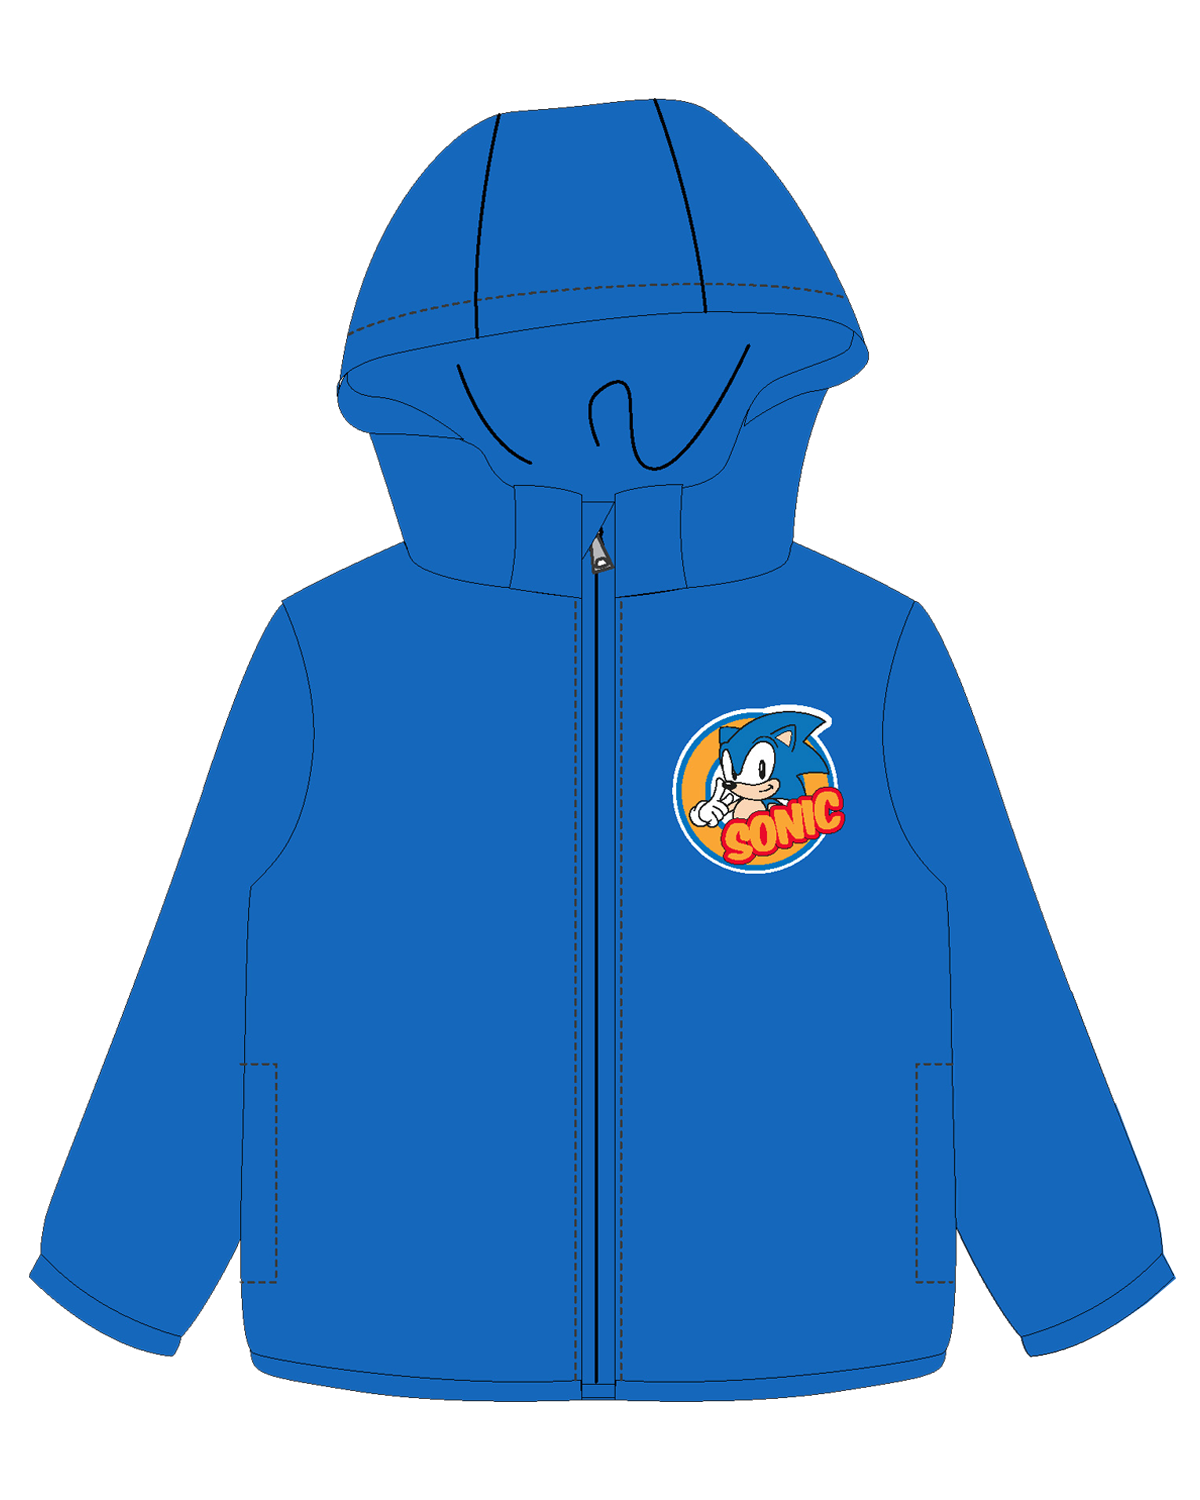 Ježek SONIC - licence Chlapecká šusťáková bunda, zateplená - Ježek Sonic 5228013W, modrá Barva: Modrá, Velikost: 122-128